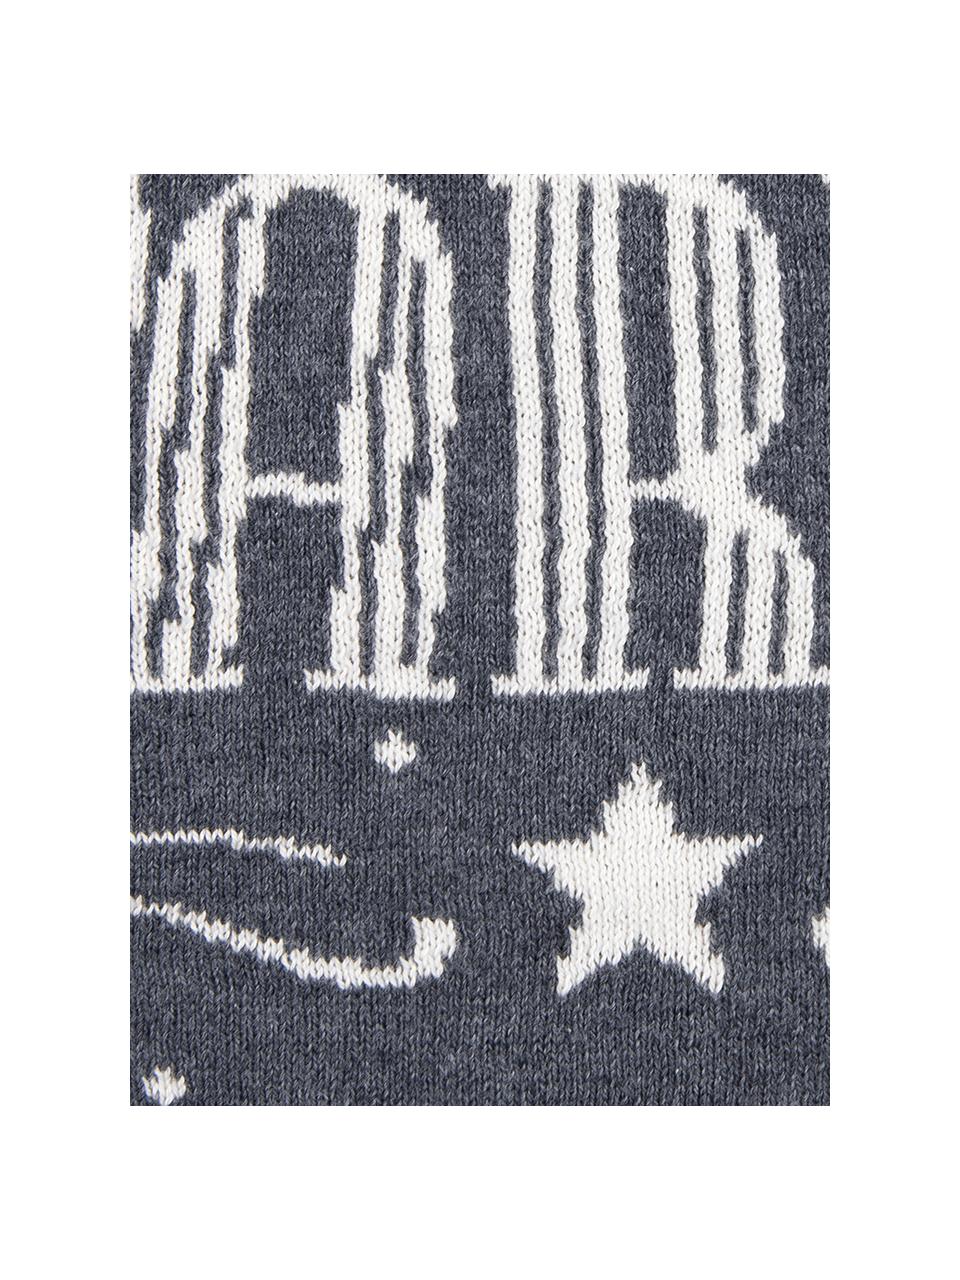 Kissenhülle Sparkle in Grau/Weiß mit Schriftzug, Baumwolle, Grau, Cremeweiß, 40 x 40 cm